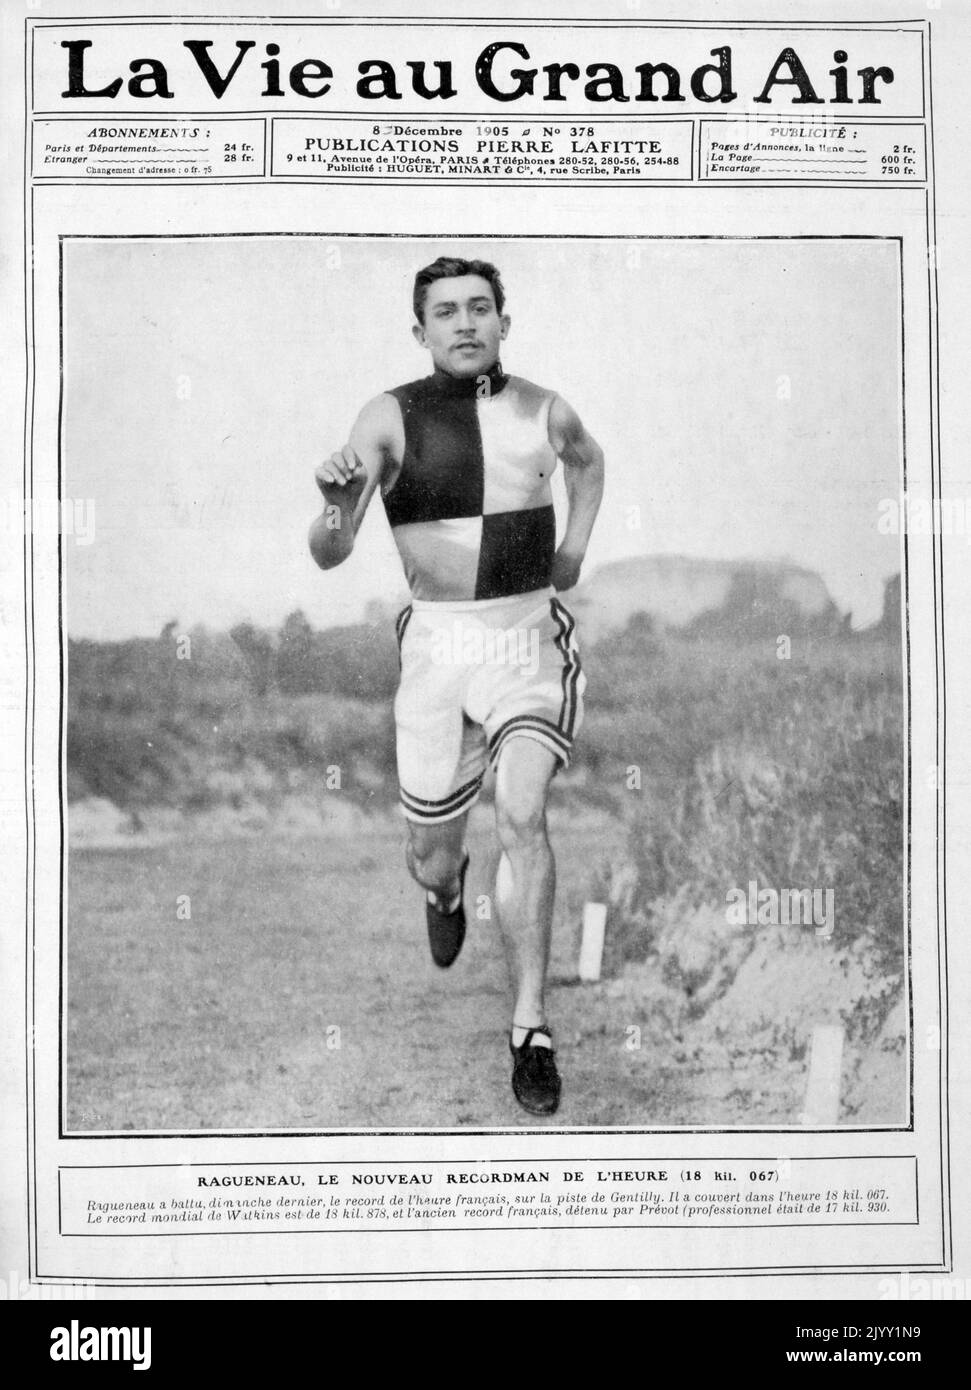 Gaston Ragueneau (Adolphe Gaston Ragueneau); (1881 - 1978), atleta francese. Ha partecipato alle Olimpiadi estive del 1900 a Parigi e alle Olimpiadi estive del 1908 a Londra. Nel 1900, Ragueneau ha vinto una medaglia d'argento con la squadra francese nella gara di 5000 metri. Nelle Olimpiadi del 1908, Ragueneau gareggiò nei 1500 metri ma non finì il suo caldo iniziale semi-finale e non avanzò fino alla finale. Foto Stock